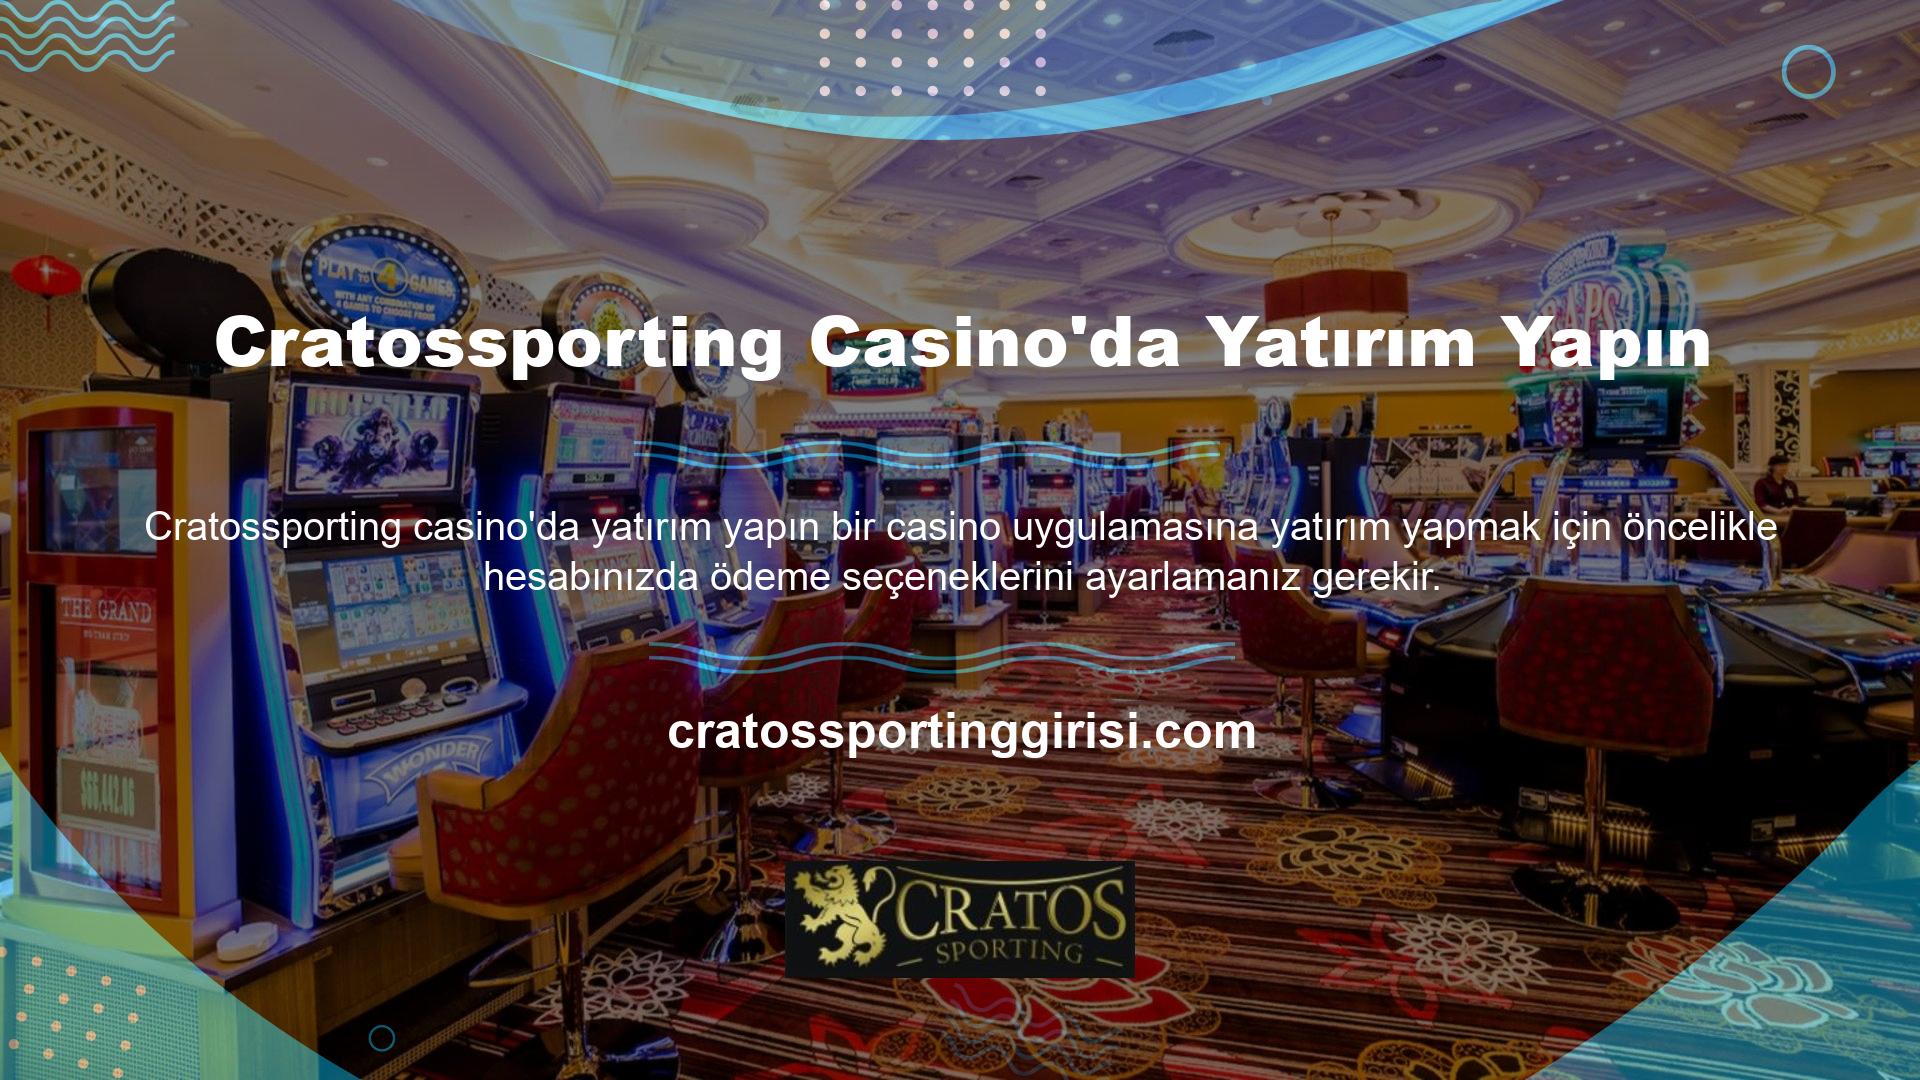 Cratossporting Casino'ya yatırım yapmak istiyorsanız, hesabınıza para yatırmanız ve ardından bir masa seçip casino uygulamasına bahislerinizi yatırmanız gerekecektir